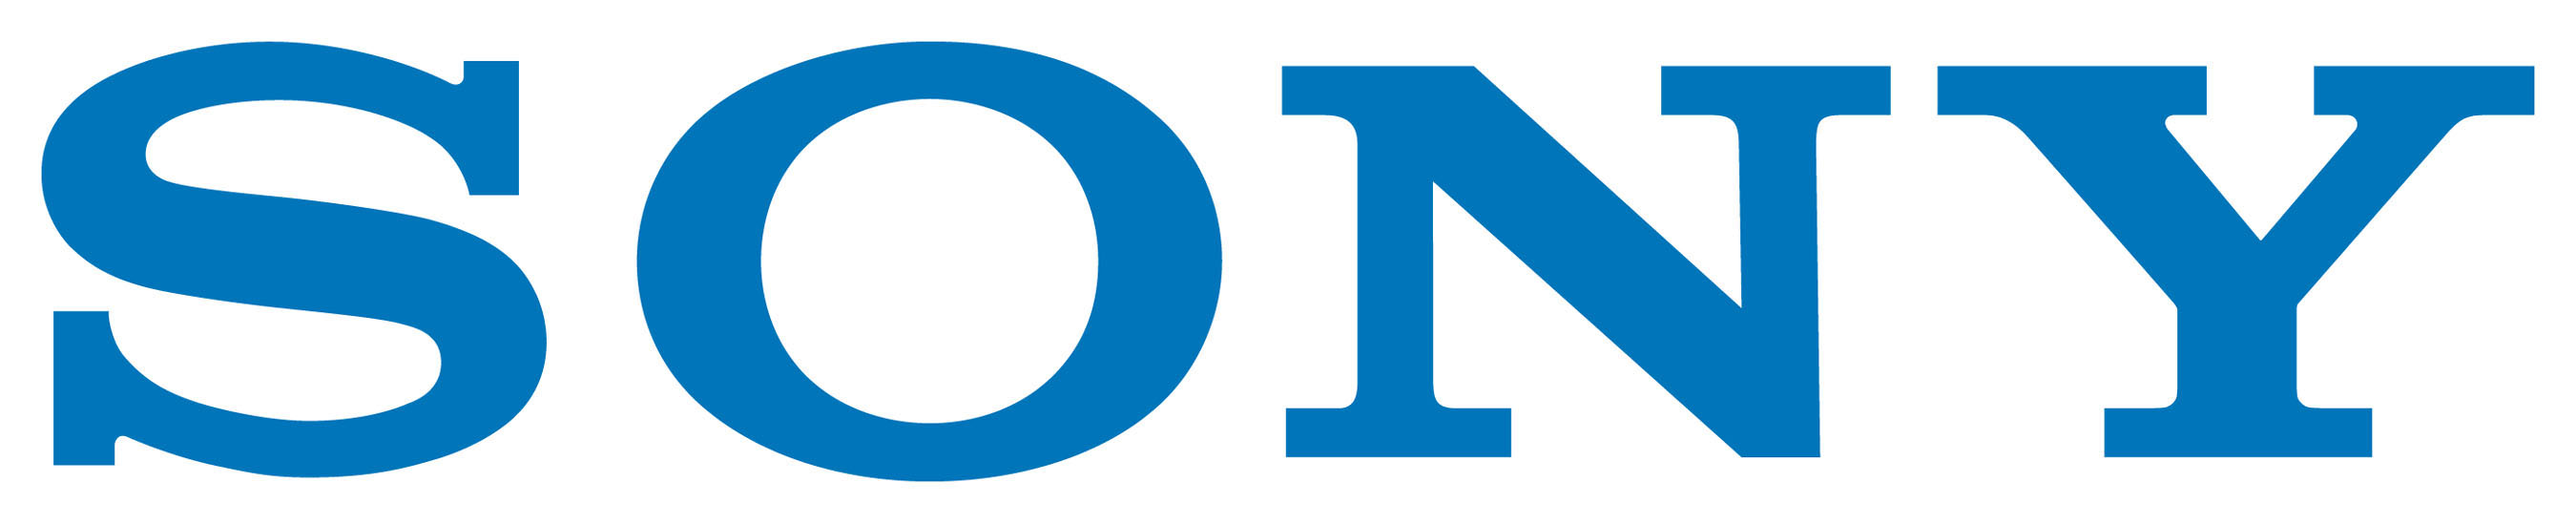 Sony Blue Logo Wallpaper